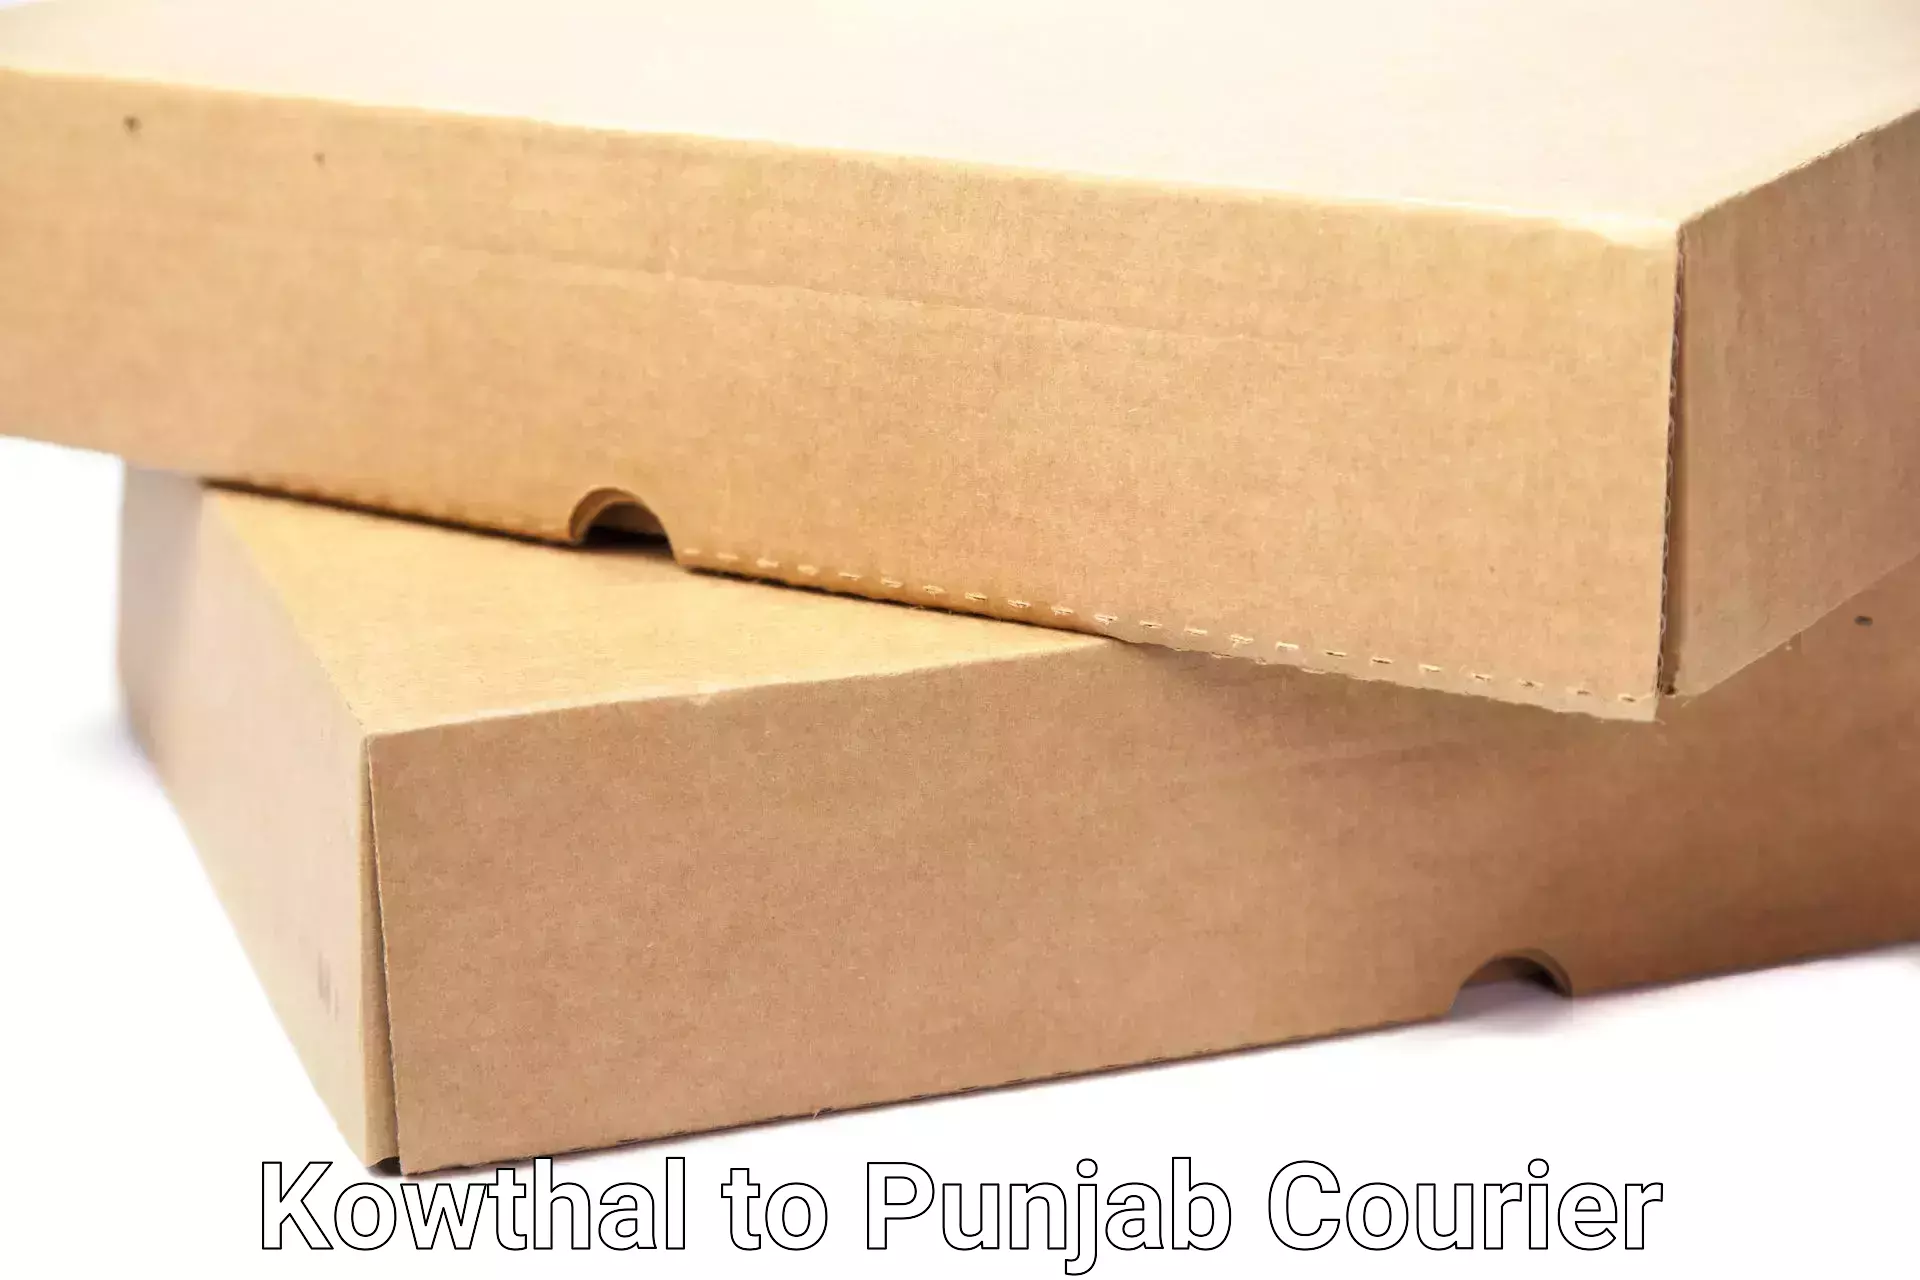 Reliable movers Kowthal to Punjab